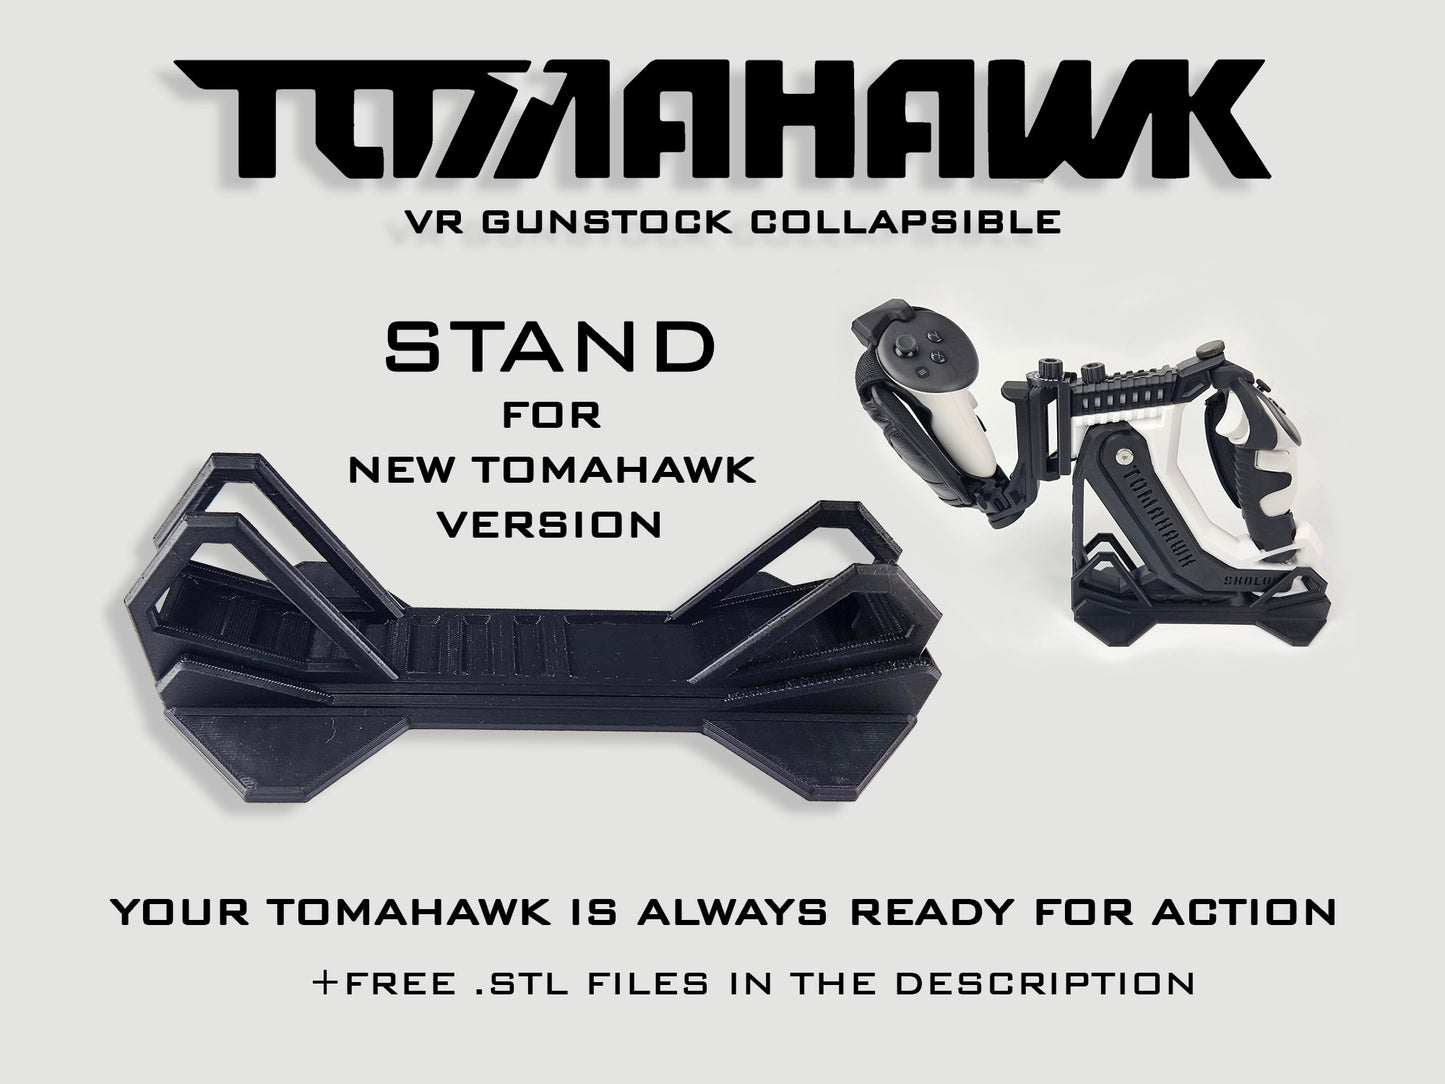 Stand for TOMAHAWK VR Gunstock 3in1